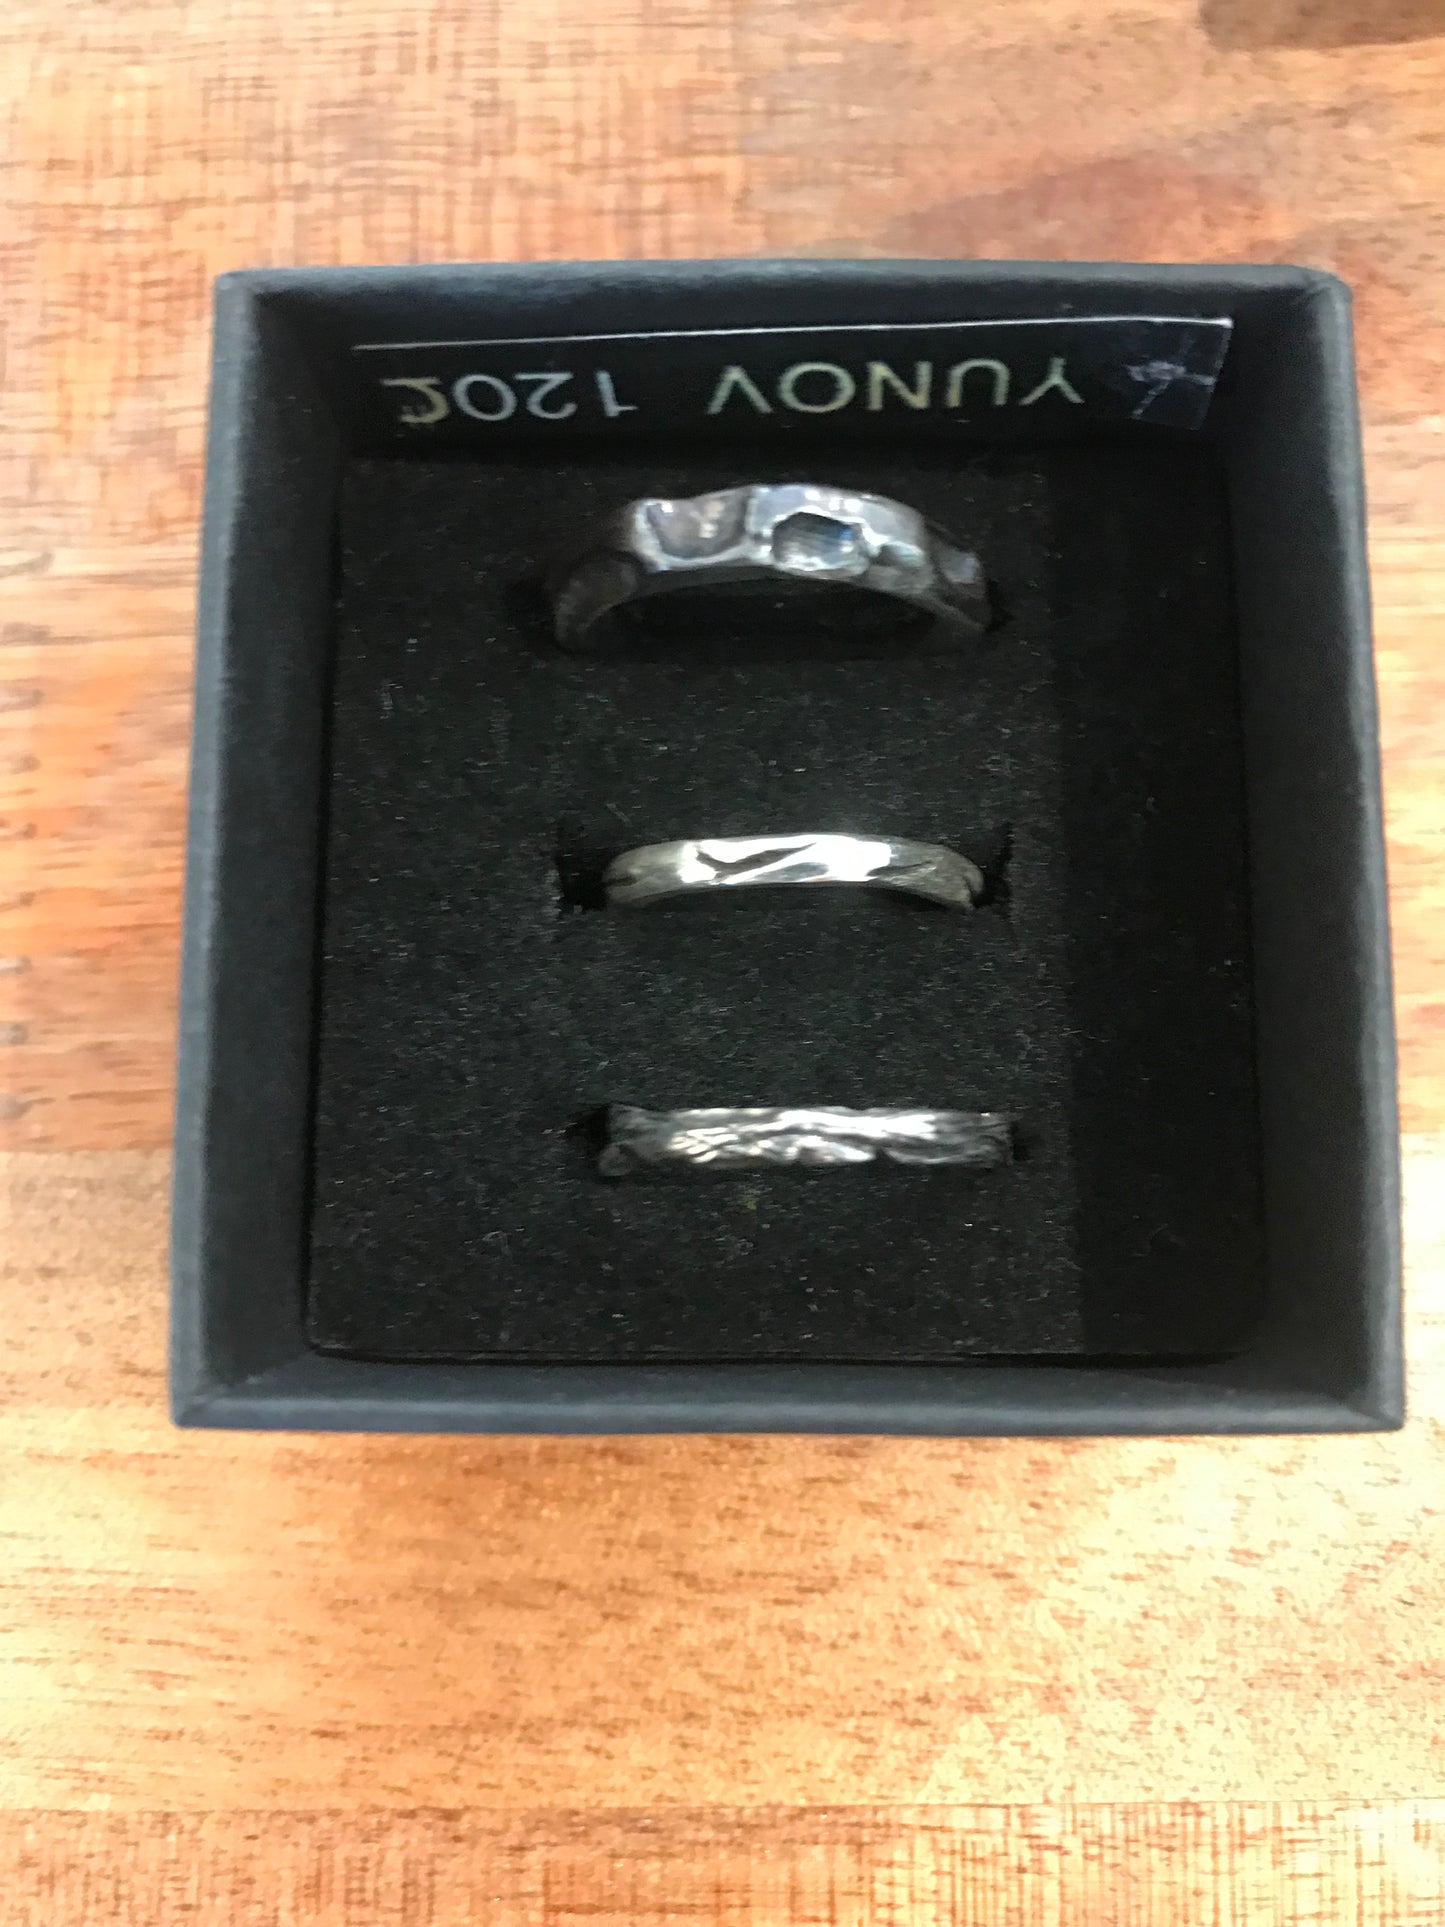 Yunov | silver rings